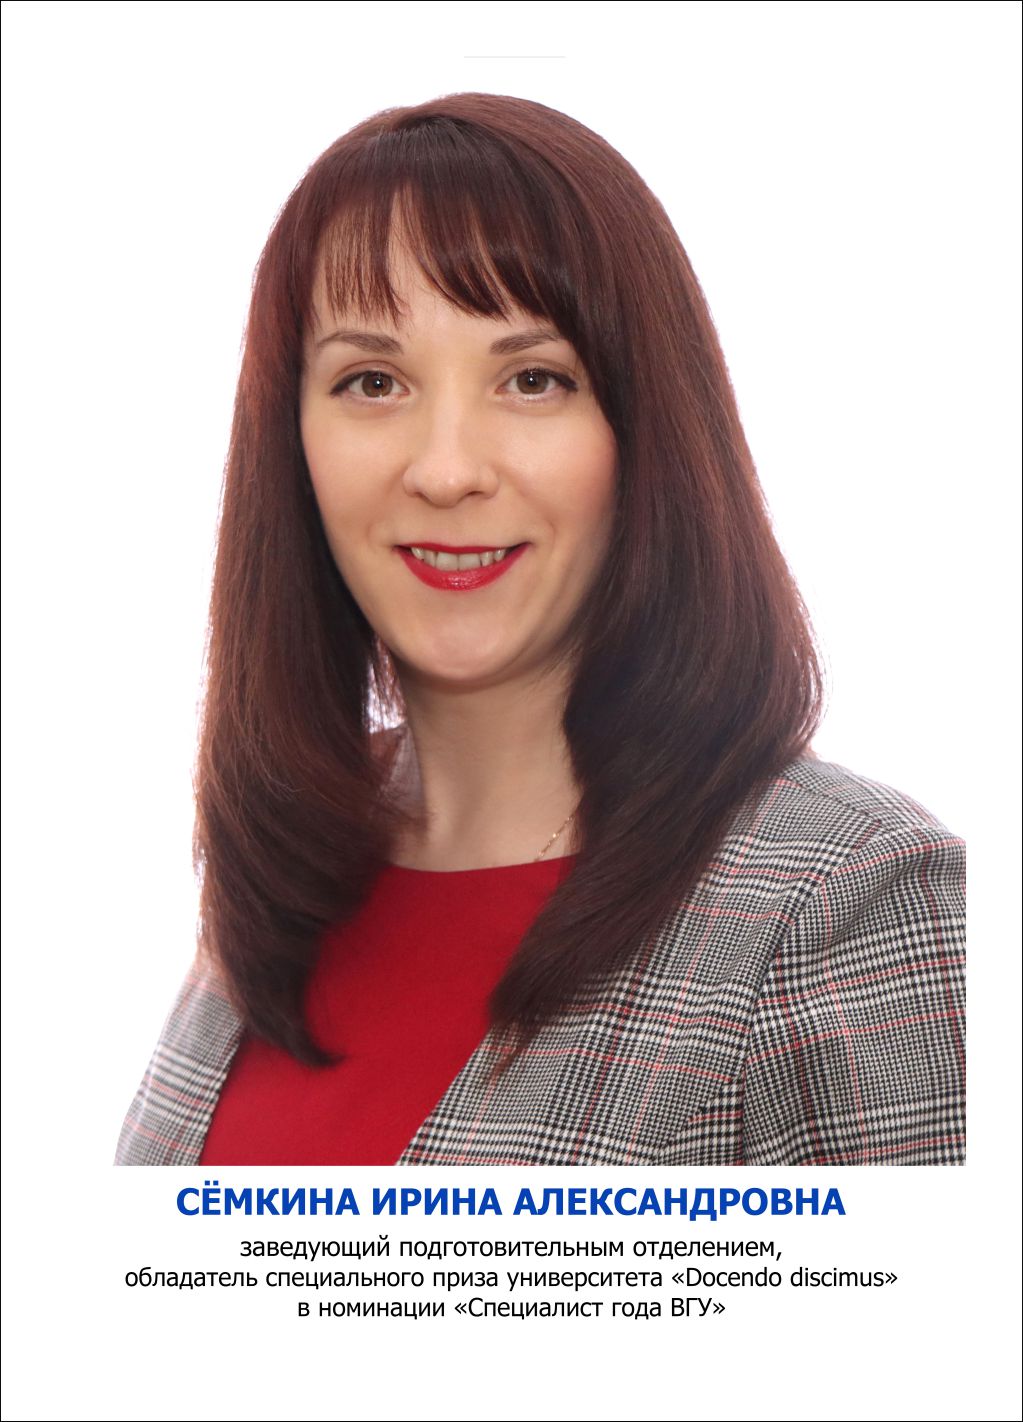 Сёмкина Ирина Александровна